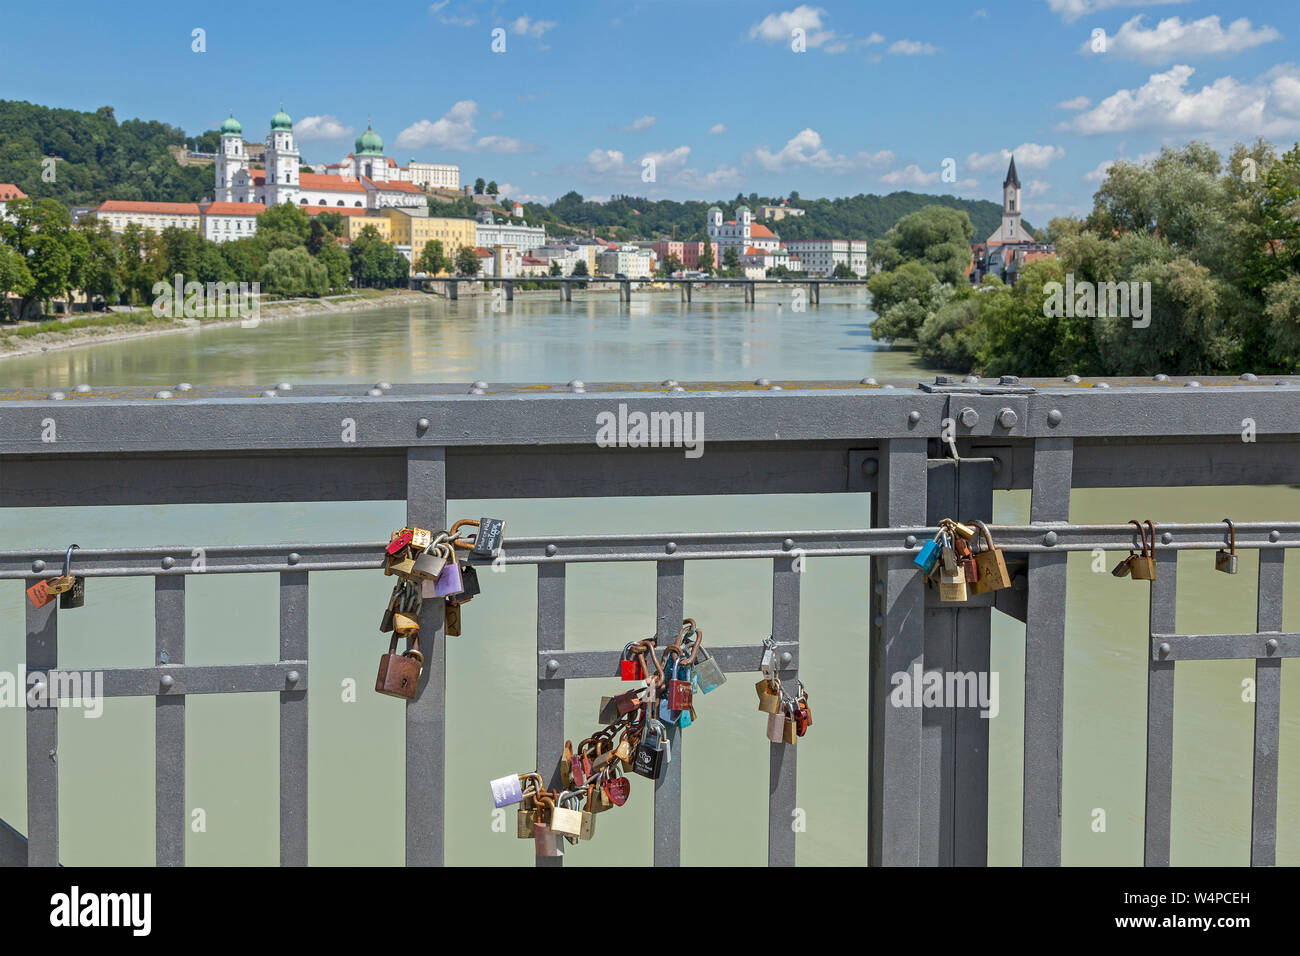 Blick auf die Altstadt von Innsteg, Passau, Niederbayern, Deutschland Stockfoto